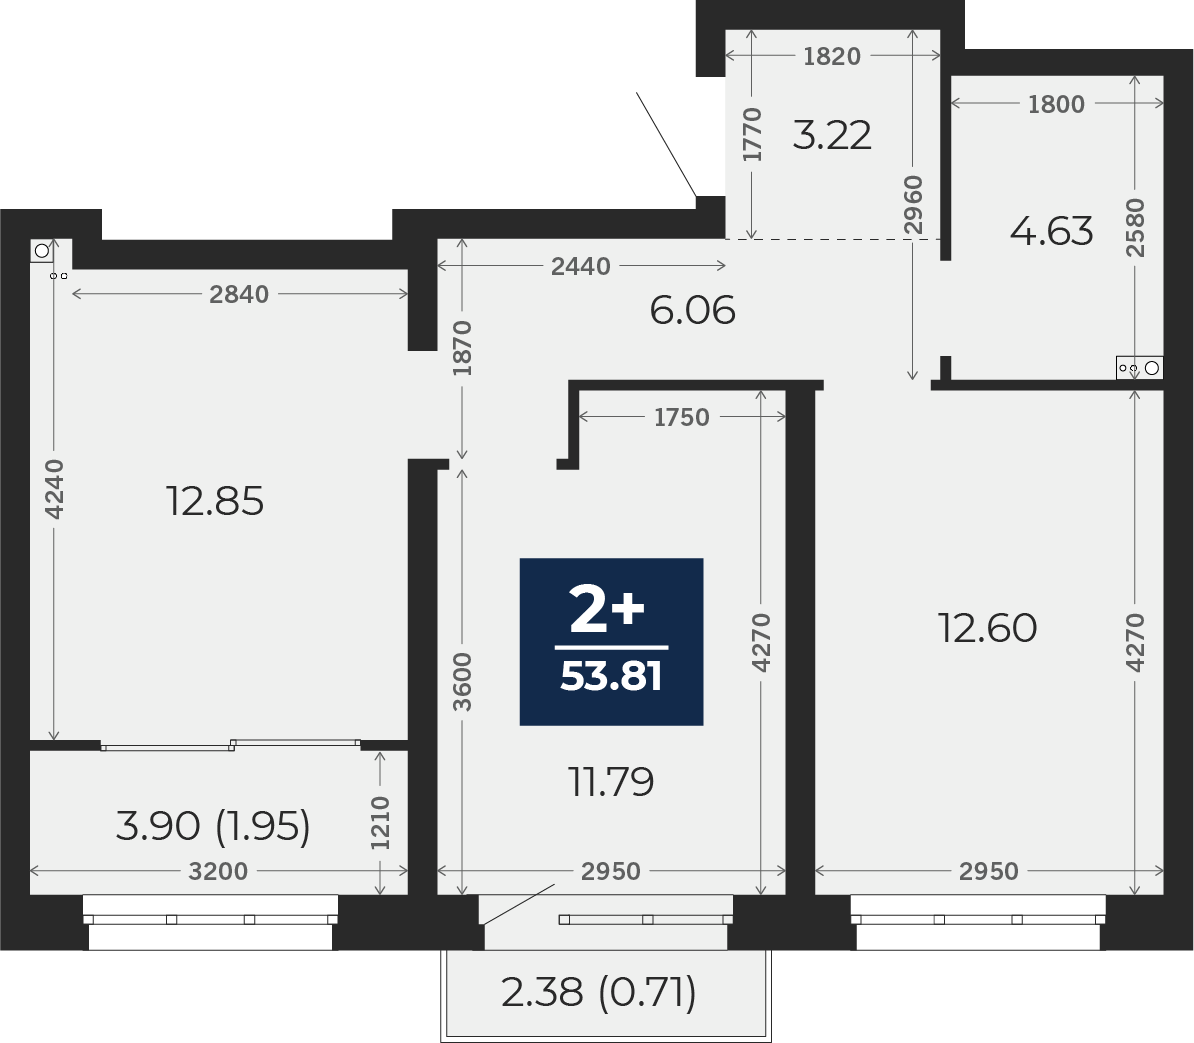 Квартира № 577, 2-комнатная, 53.81 кв. м, 7 этаж